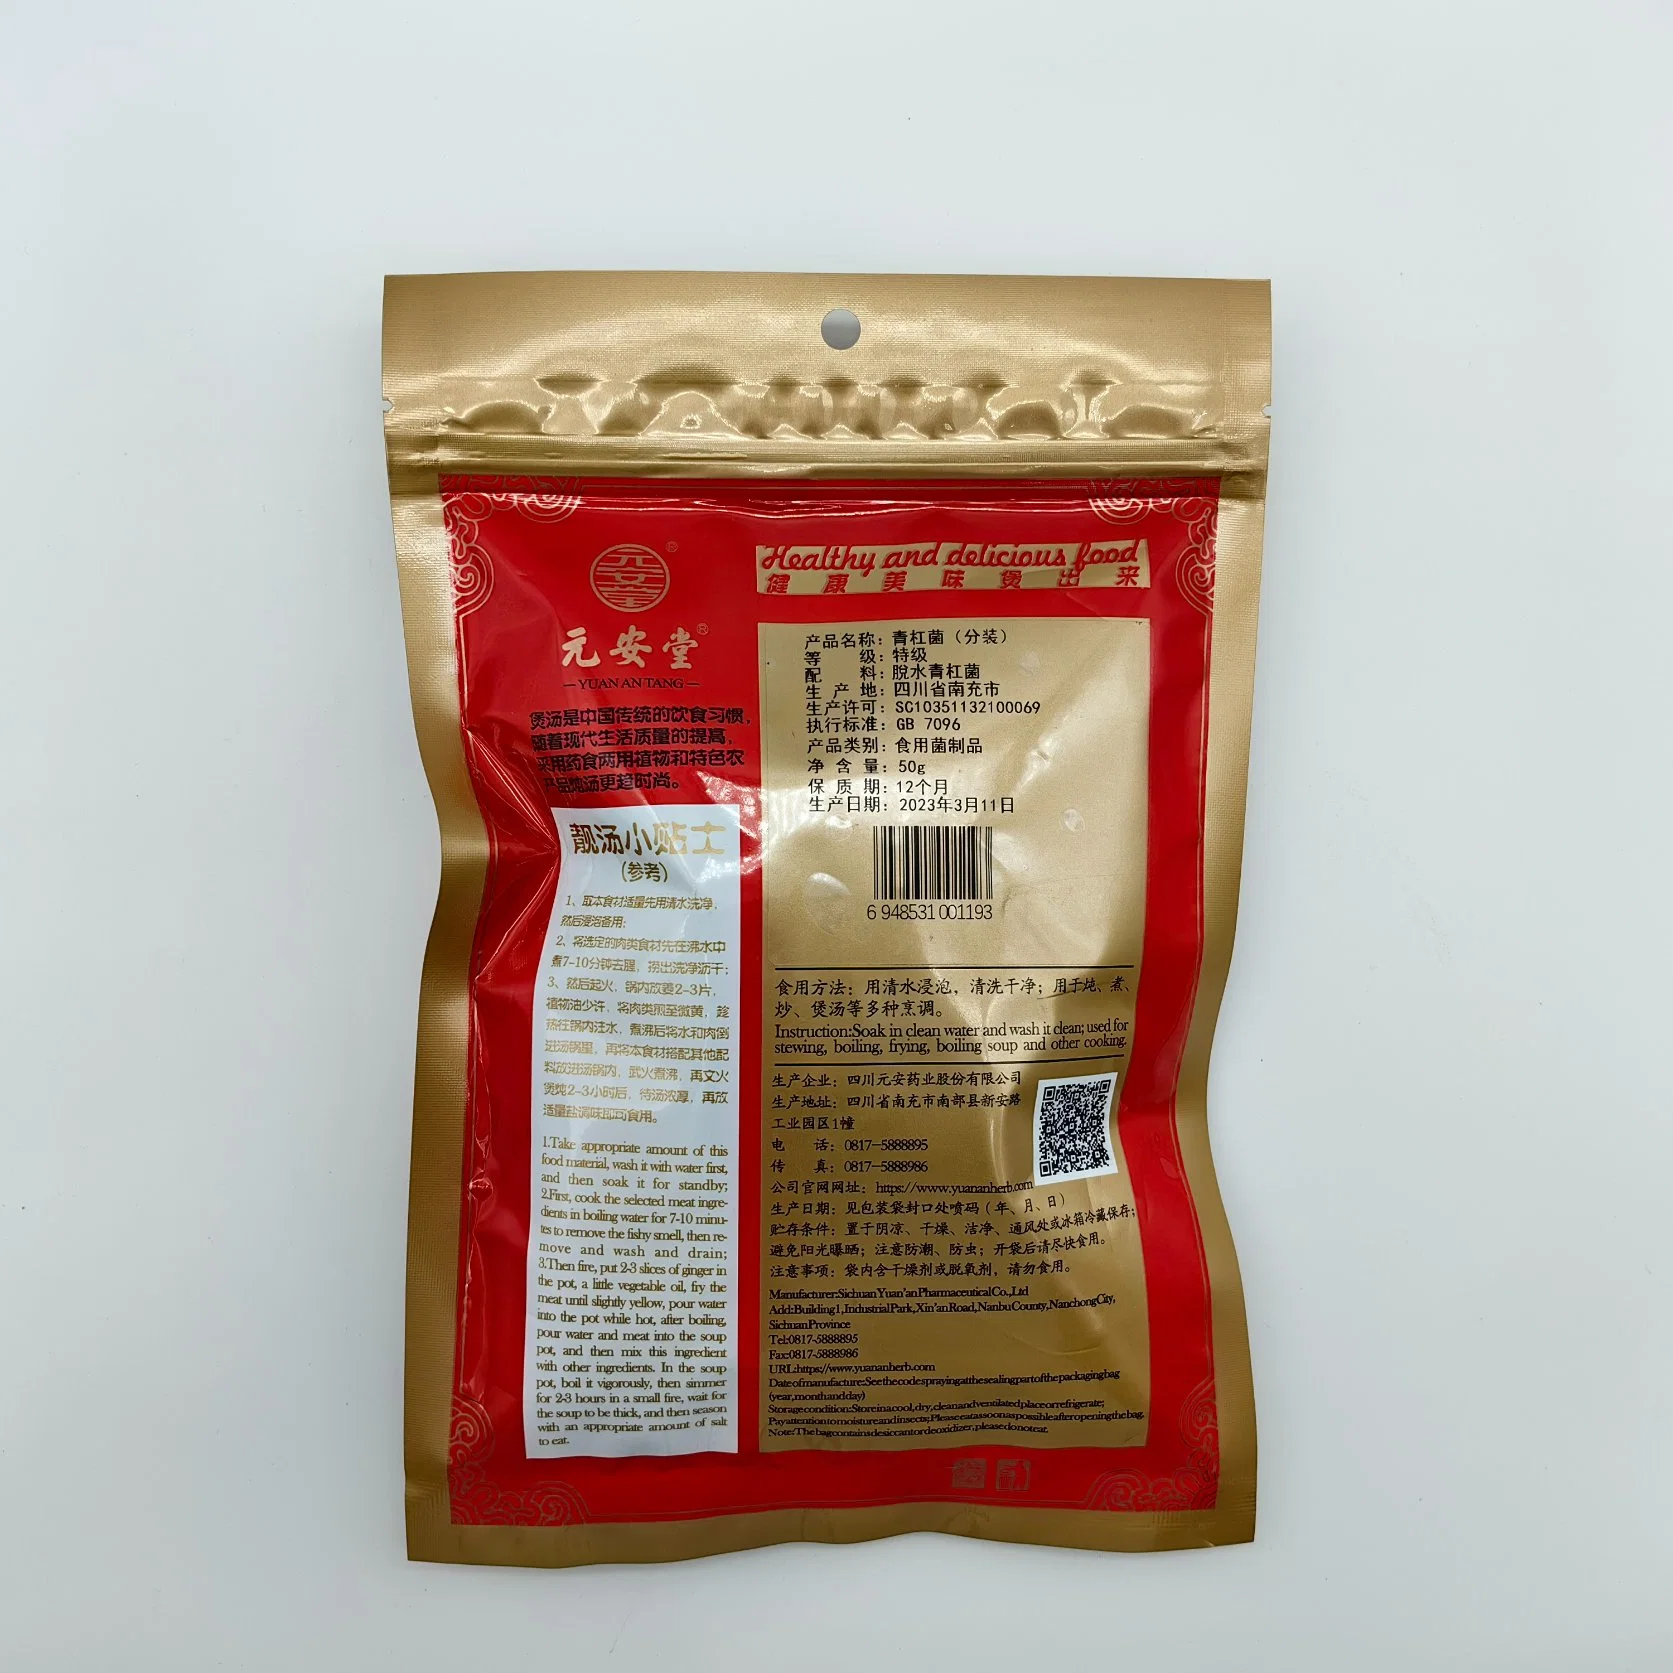 الرعاية الصحية تريشولوما باكاماتسوتوخذ شاي الأعشاب الصينية Hongo Herbal Medicine